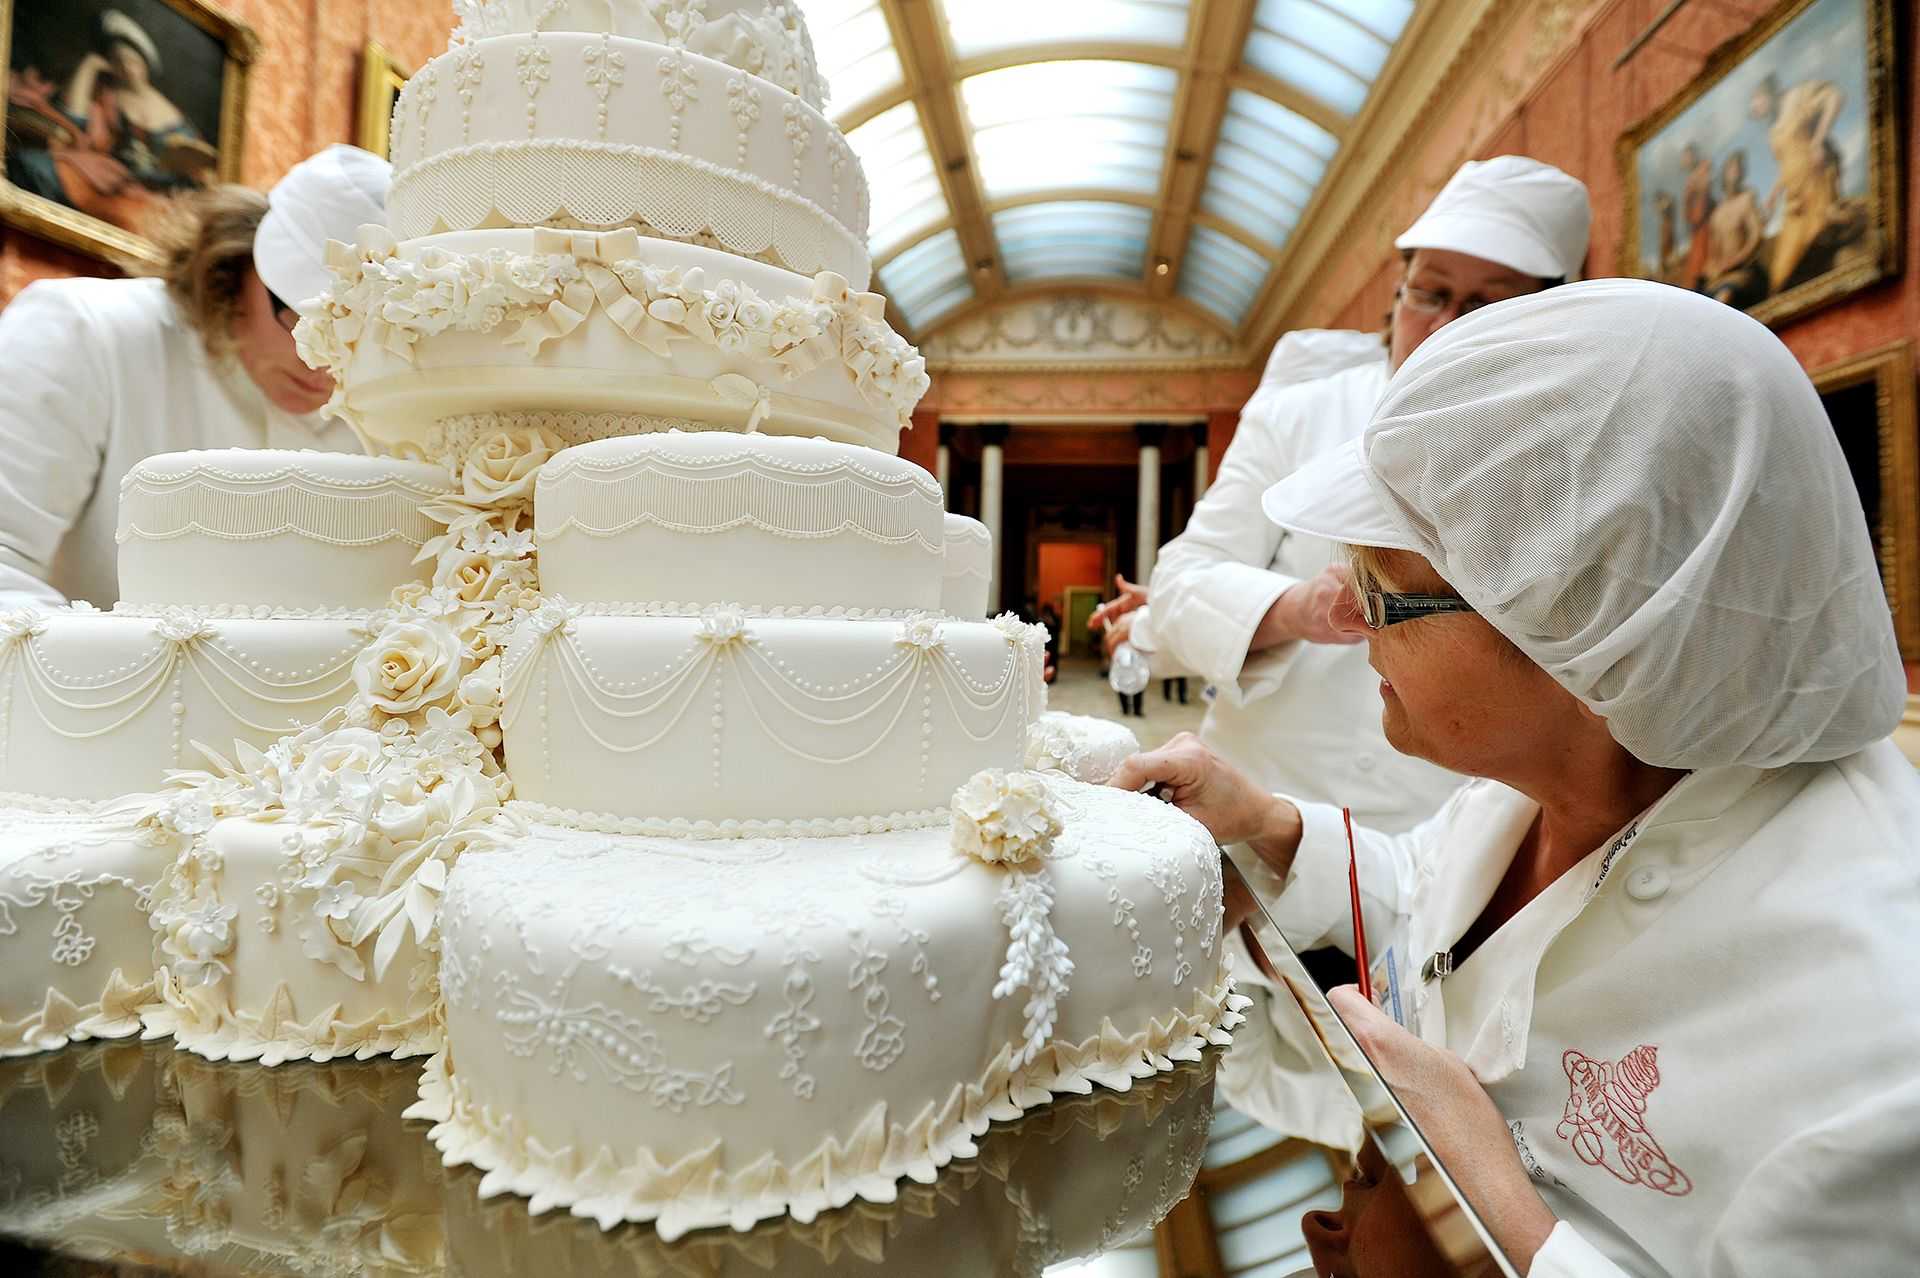 Королевский свадебный торт принца Уильяма и Кейт Миддлтон. Свадебный торт принца Уильяма и Кейт Миддлтон. Свадебный торт Кейт Миддлтон. Торт на свадьбе Кейт Миддлтон и принца Уильяма. Кондитер украшает торты